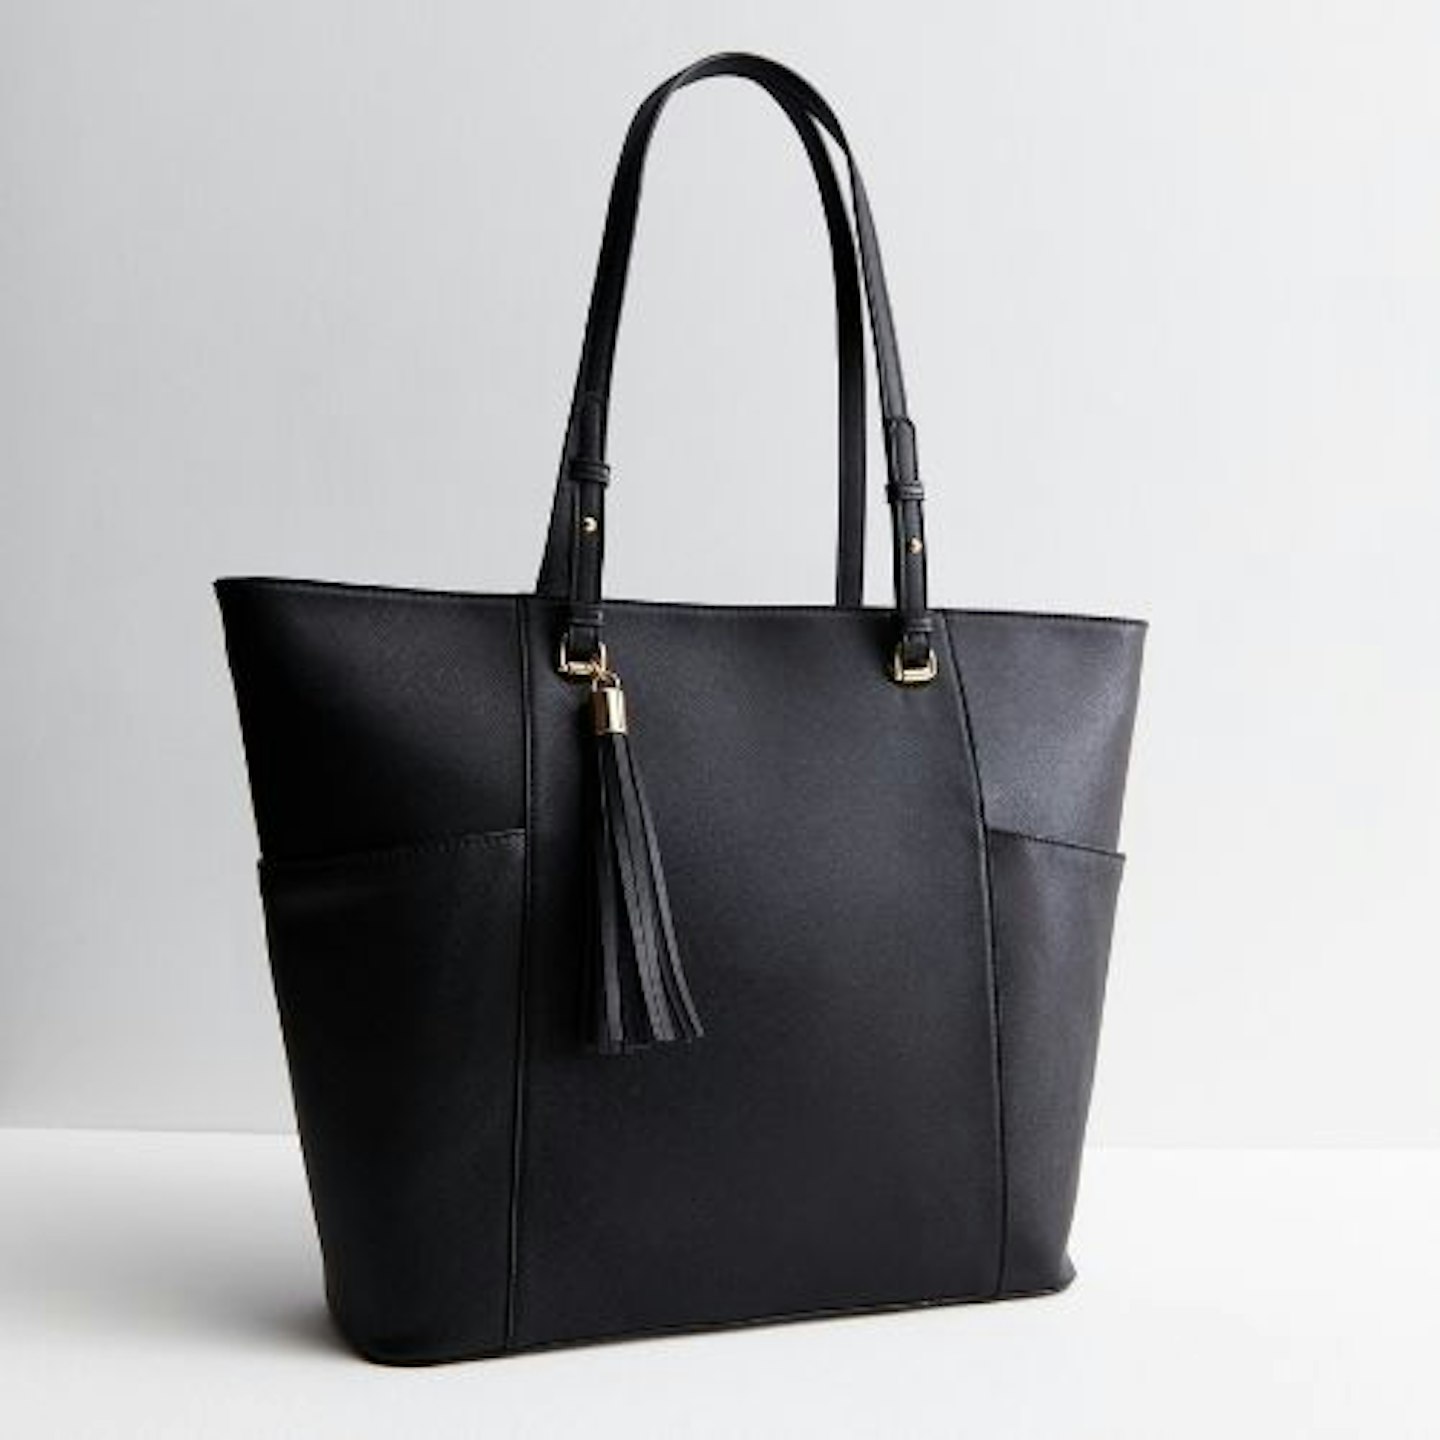 Black Leather-Look Tassel Tote Bag